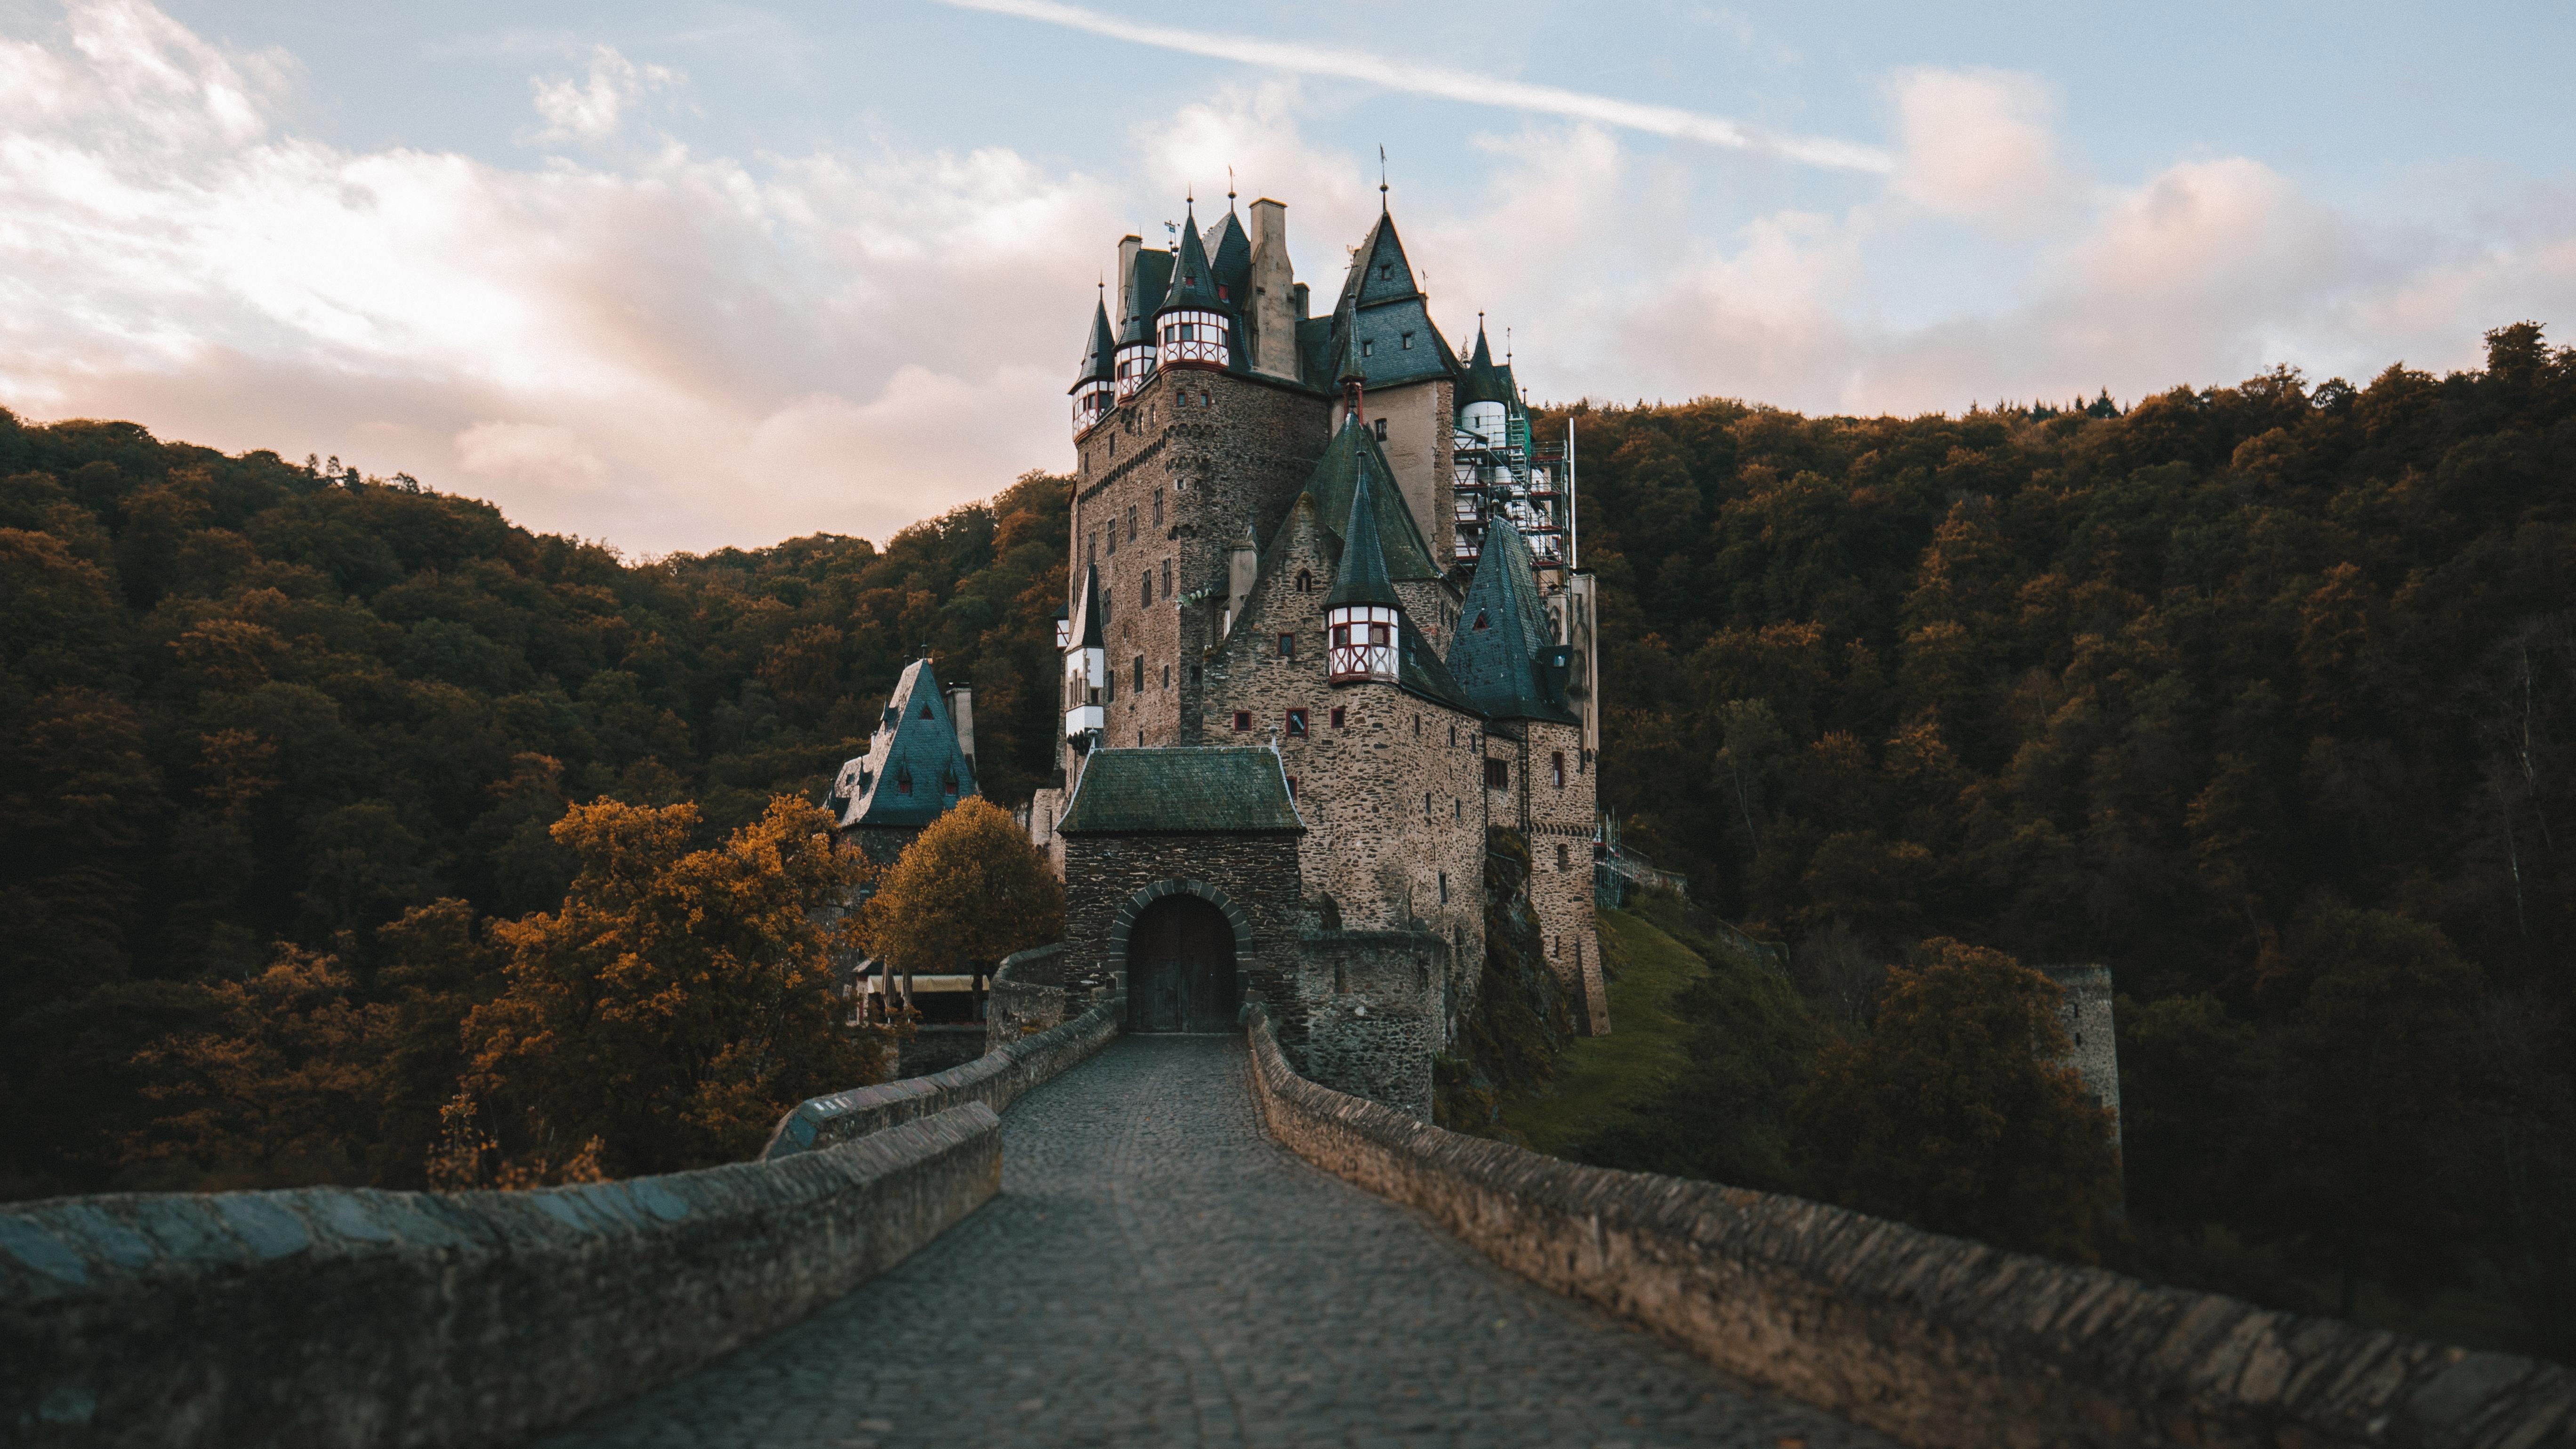 Eltz Castle, Germany [5472 x 3078] (16:9)